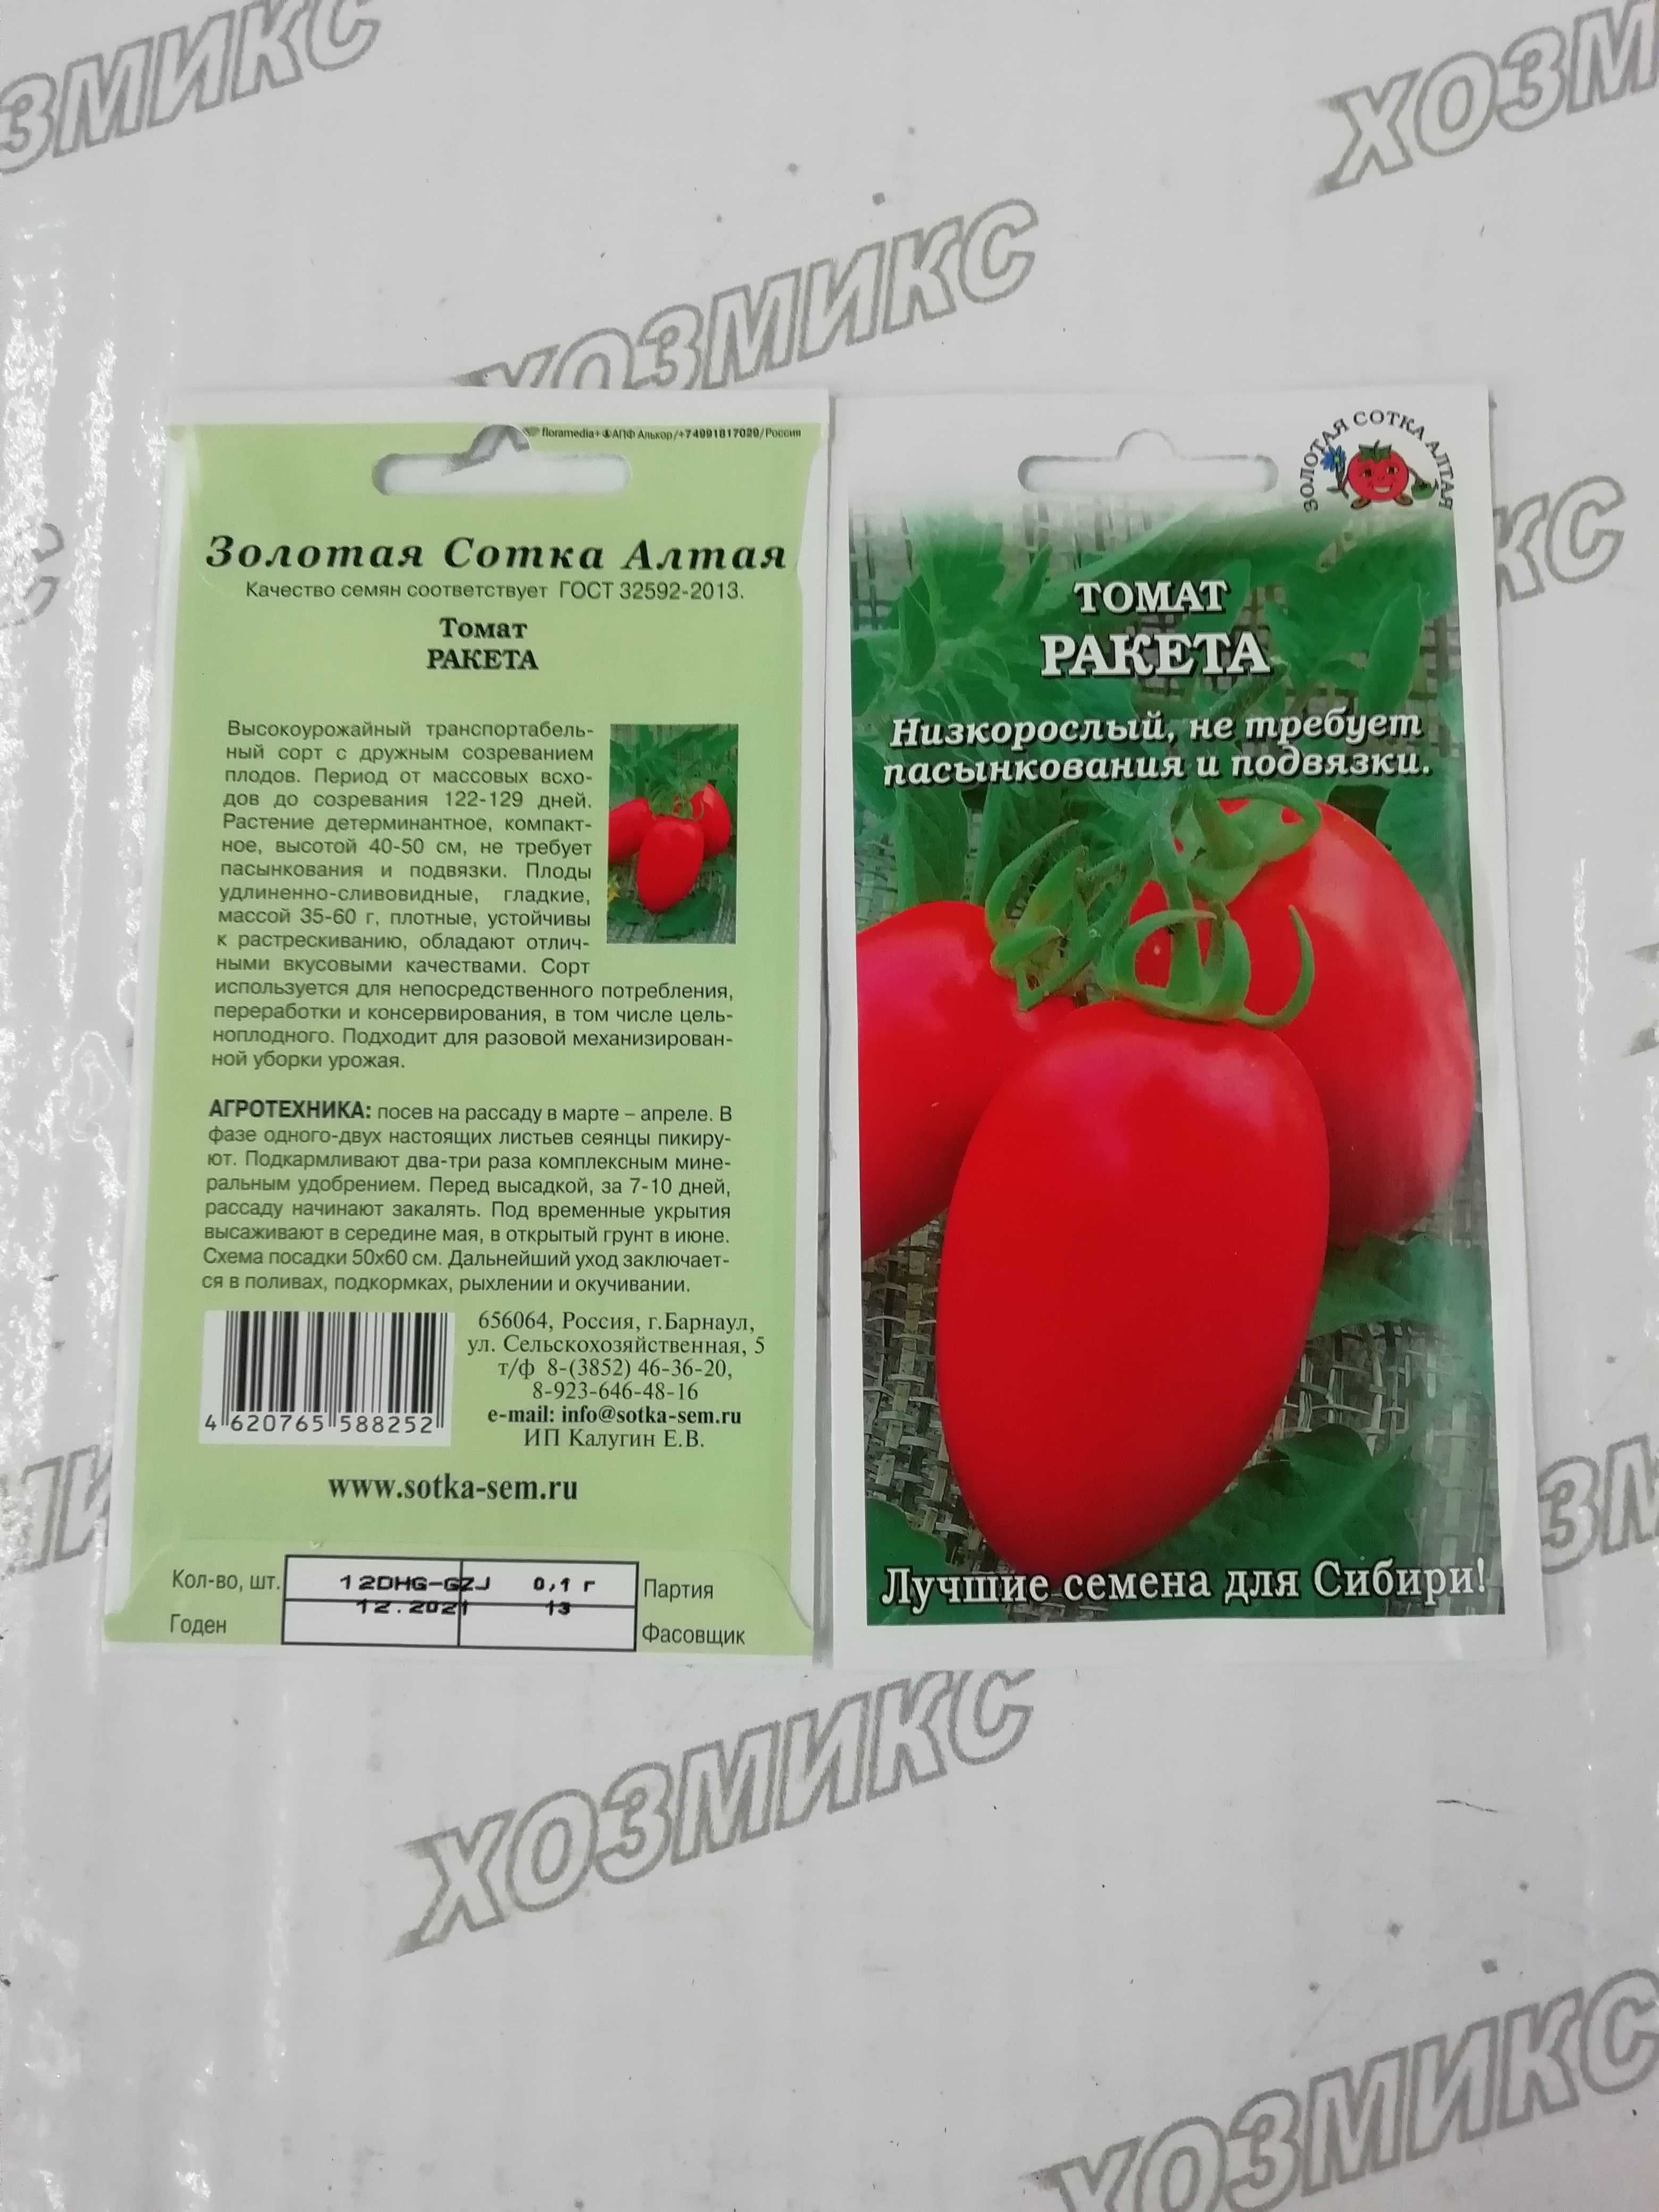 Сорт для промышленного выращивания — томат ракета: описание помидоров и их характеристики